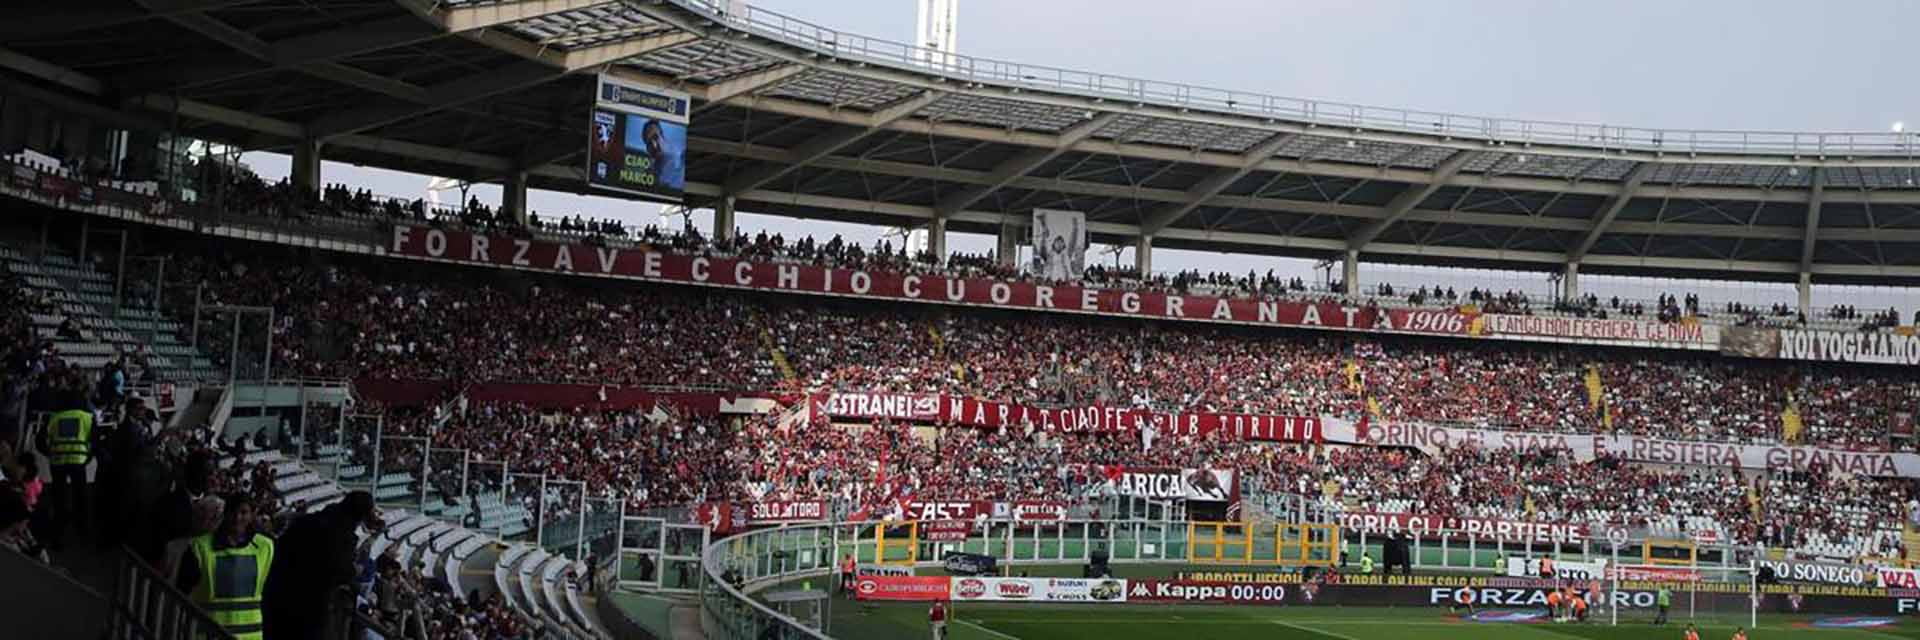 Torino FC - AC Milan, 7 oktoberom 20:45